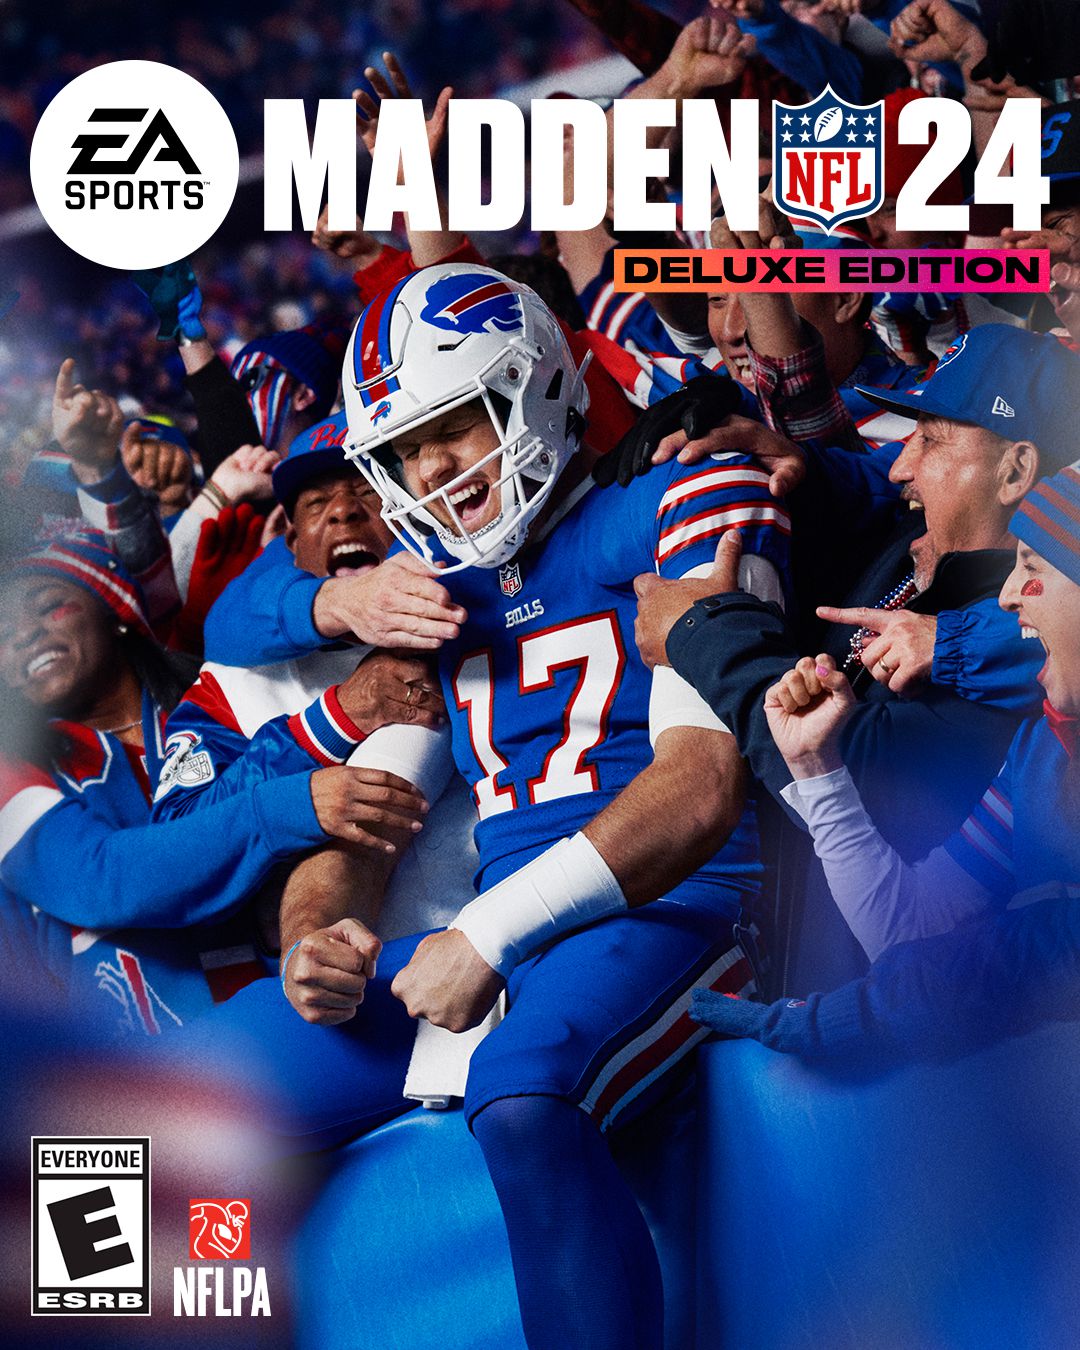 La couverture de l'édition de luxe de Madden NFL 24 ; Josh Allen des Buffalo Bills célèbre avec les fans dans les gradins.